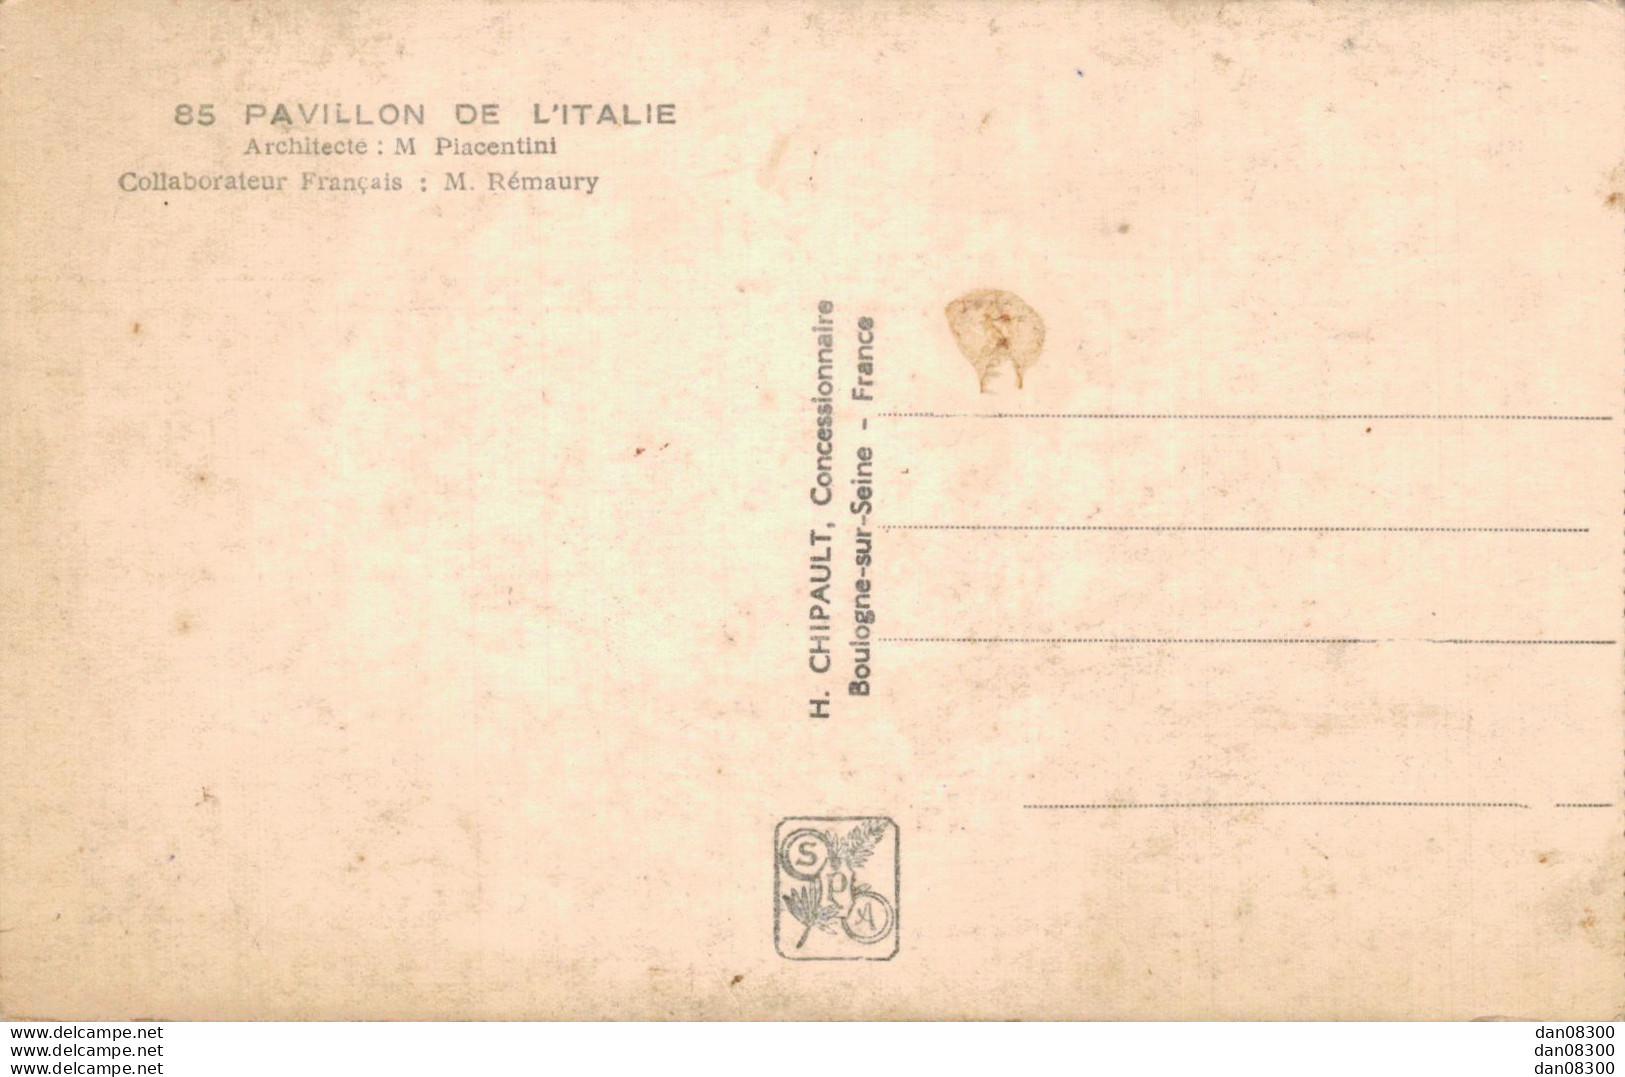 75 EXPOSITION INTERNATIONALE PARIS 1937 PAVILLON DE L'ITALIE - Expositions